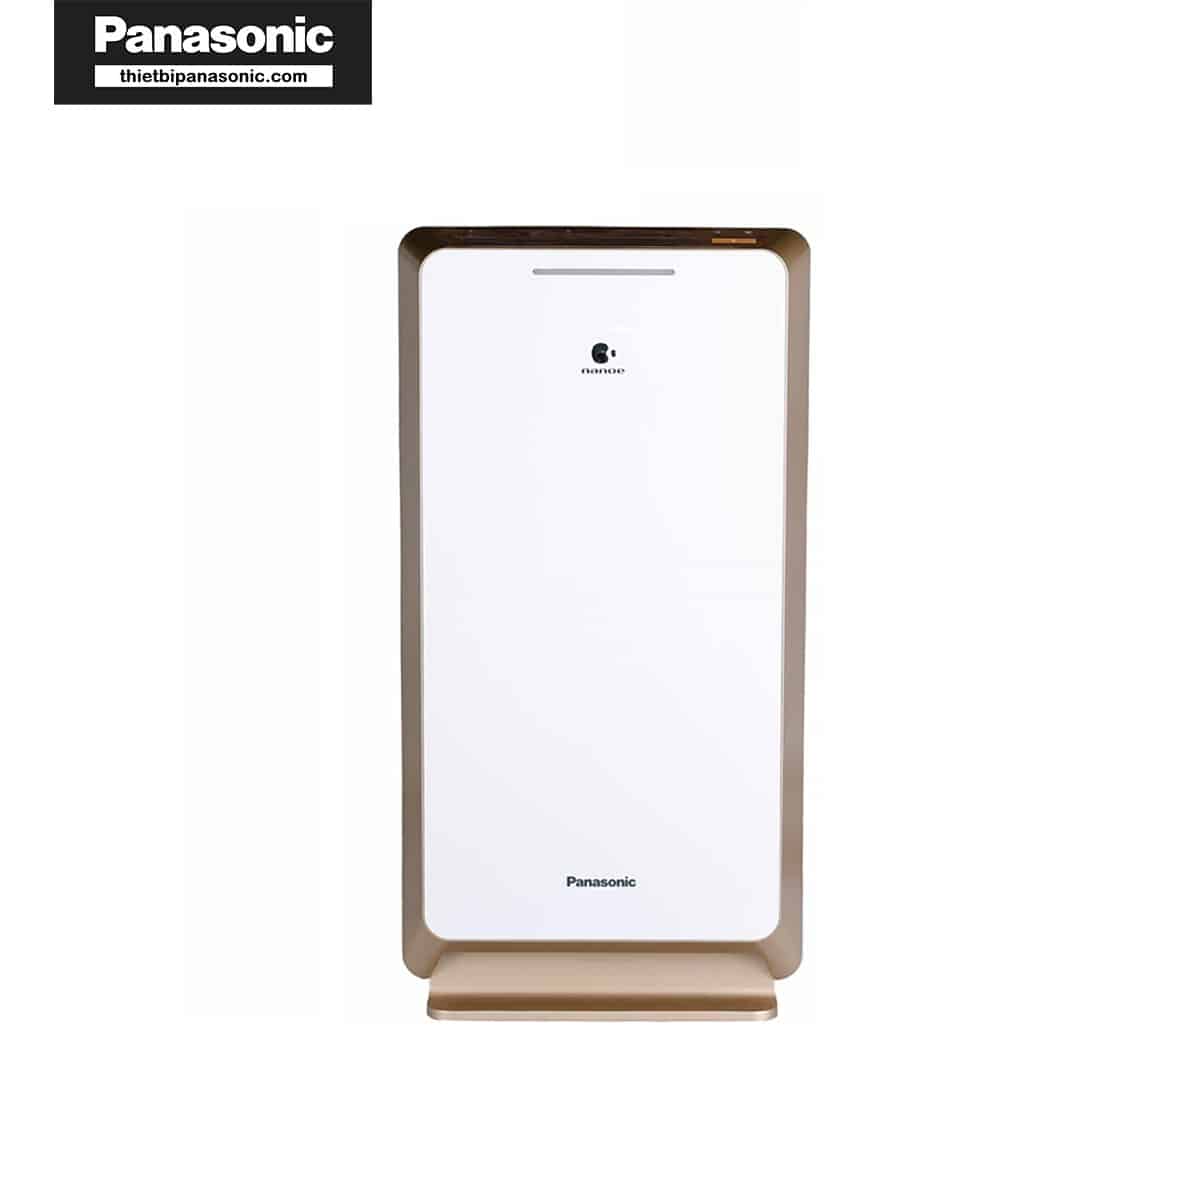 Máy lọc không khí Panasonic F-PXM55A sử dụng phù hợp với màng lọc khử mùi Panasonic